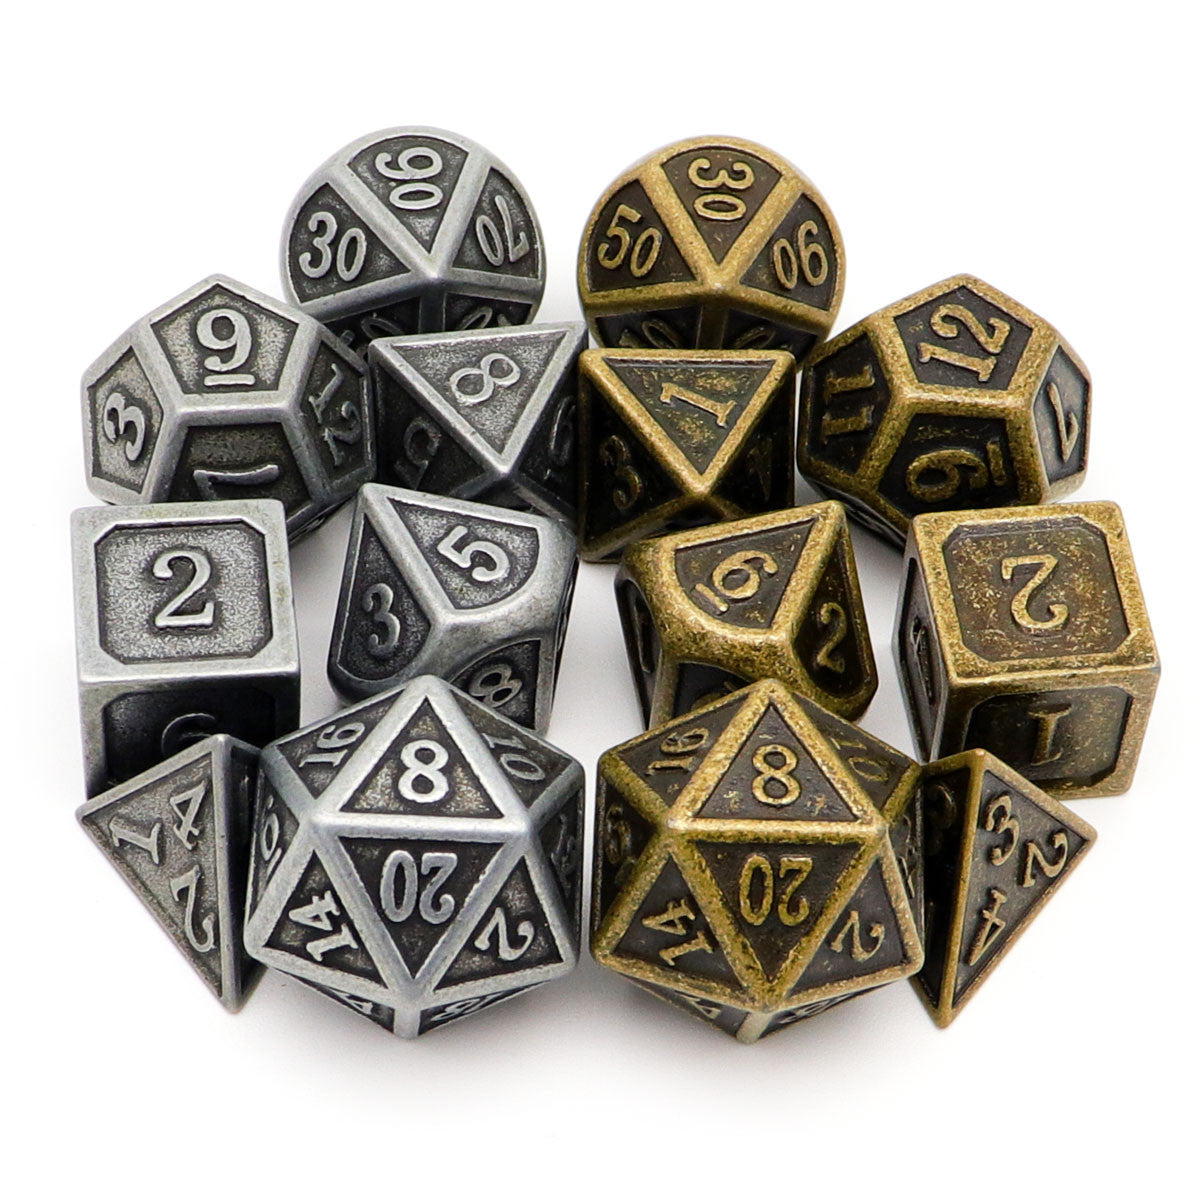 antique dice, metal dnd dice, dice set, copper dice, iron dice, bronze dice, metal dice